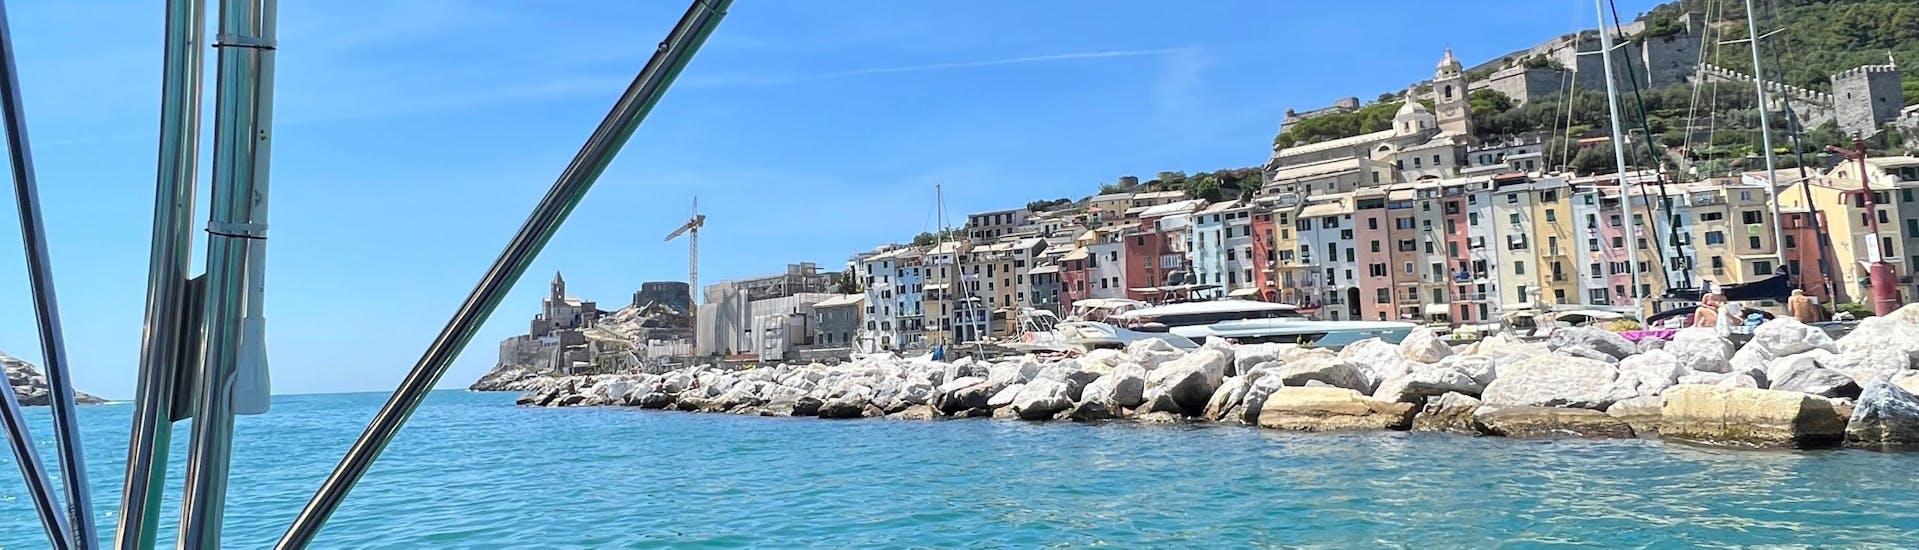 La vista che potrete ammirare durante la Gita in barca privata da La Spezia alle Cinque Terre con sosta a Porto Venere con Maestrale Boat Tour Cinque Terre.